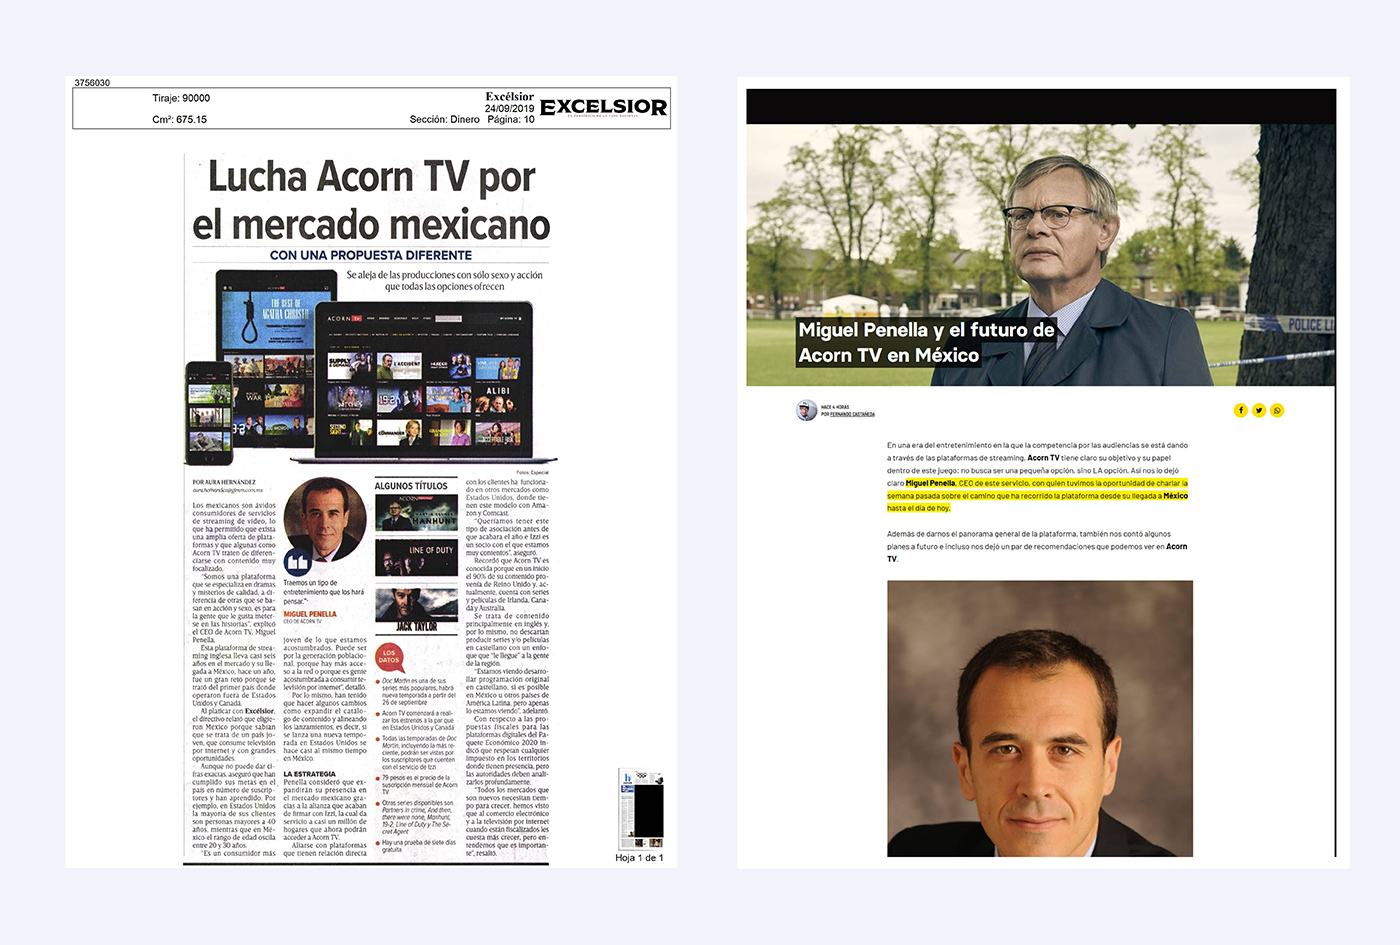 Acorn TV - Streaming de clase mundial en México